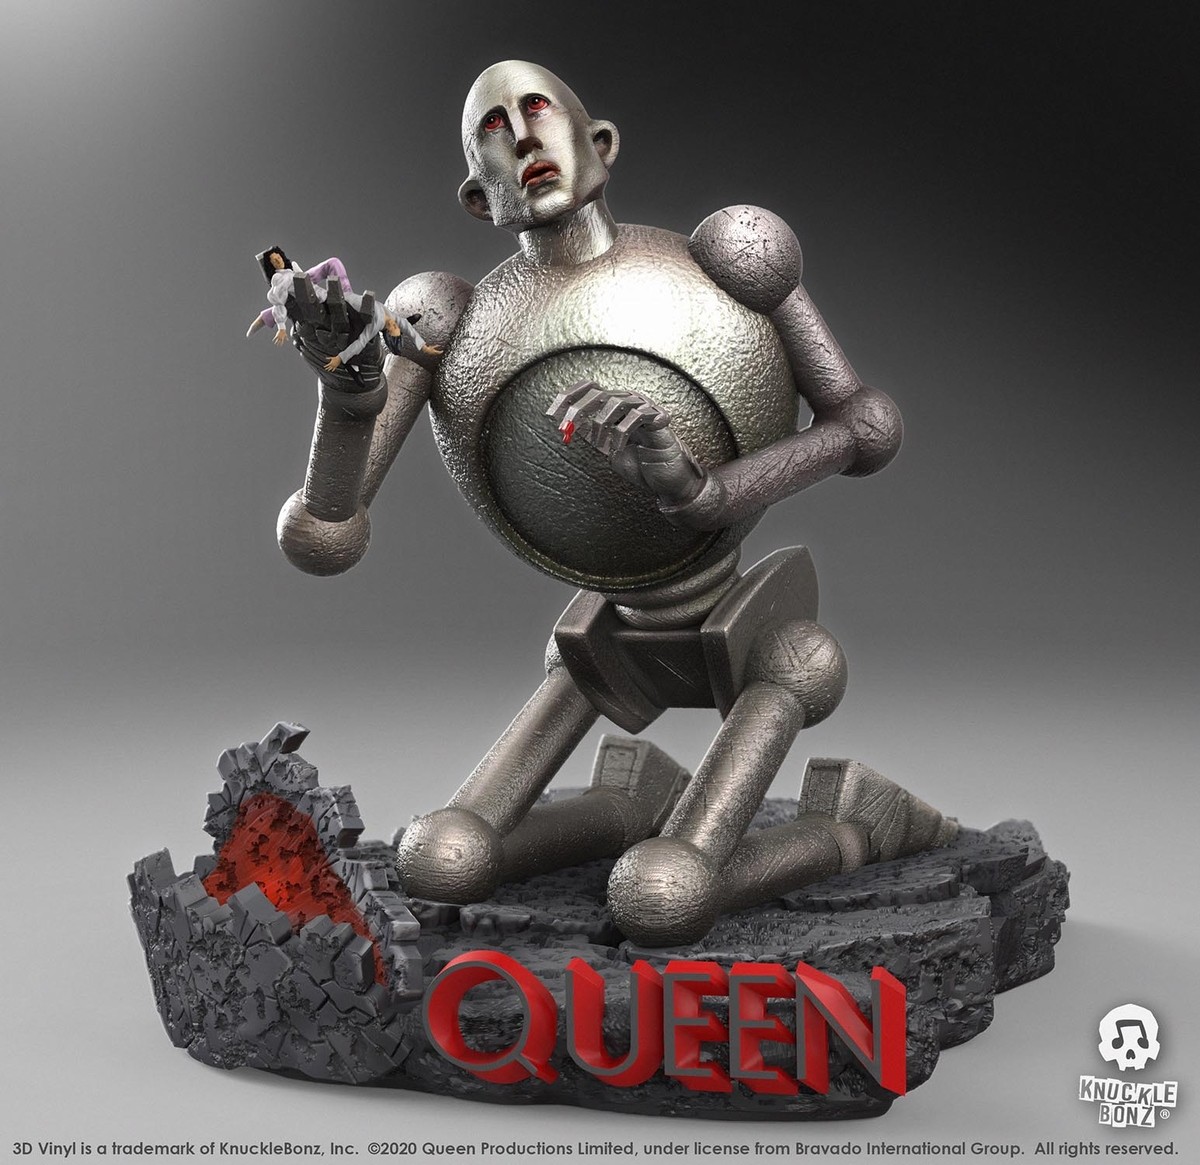 dekorace (3D vinyl) Queen - Statue Queen Robot - (News of the World)